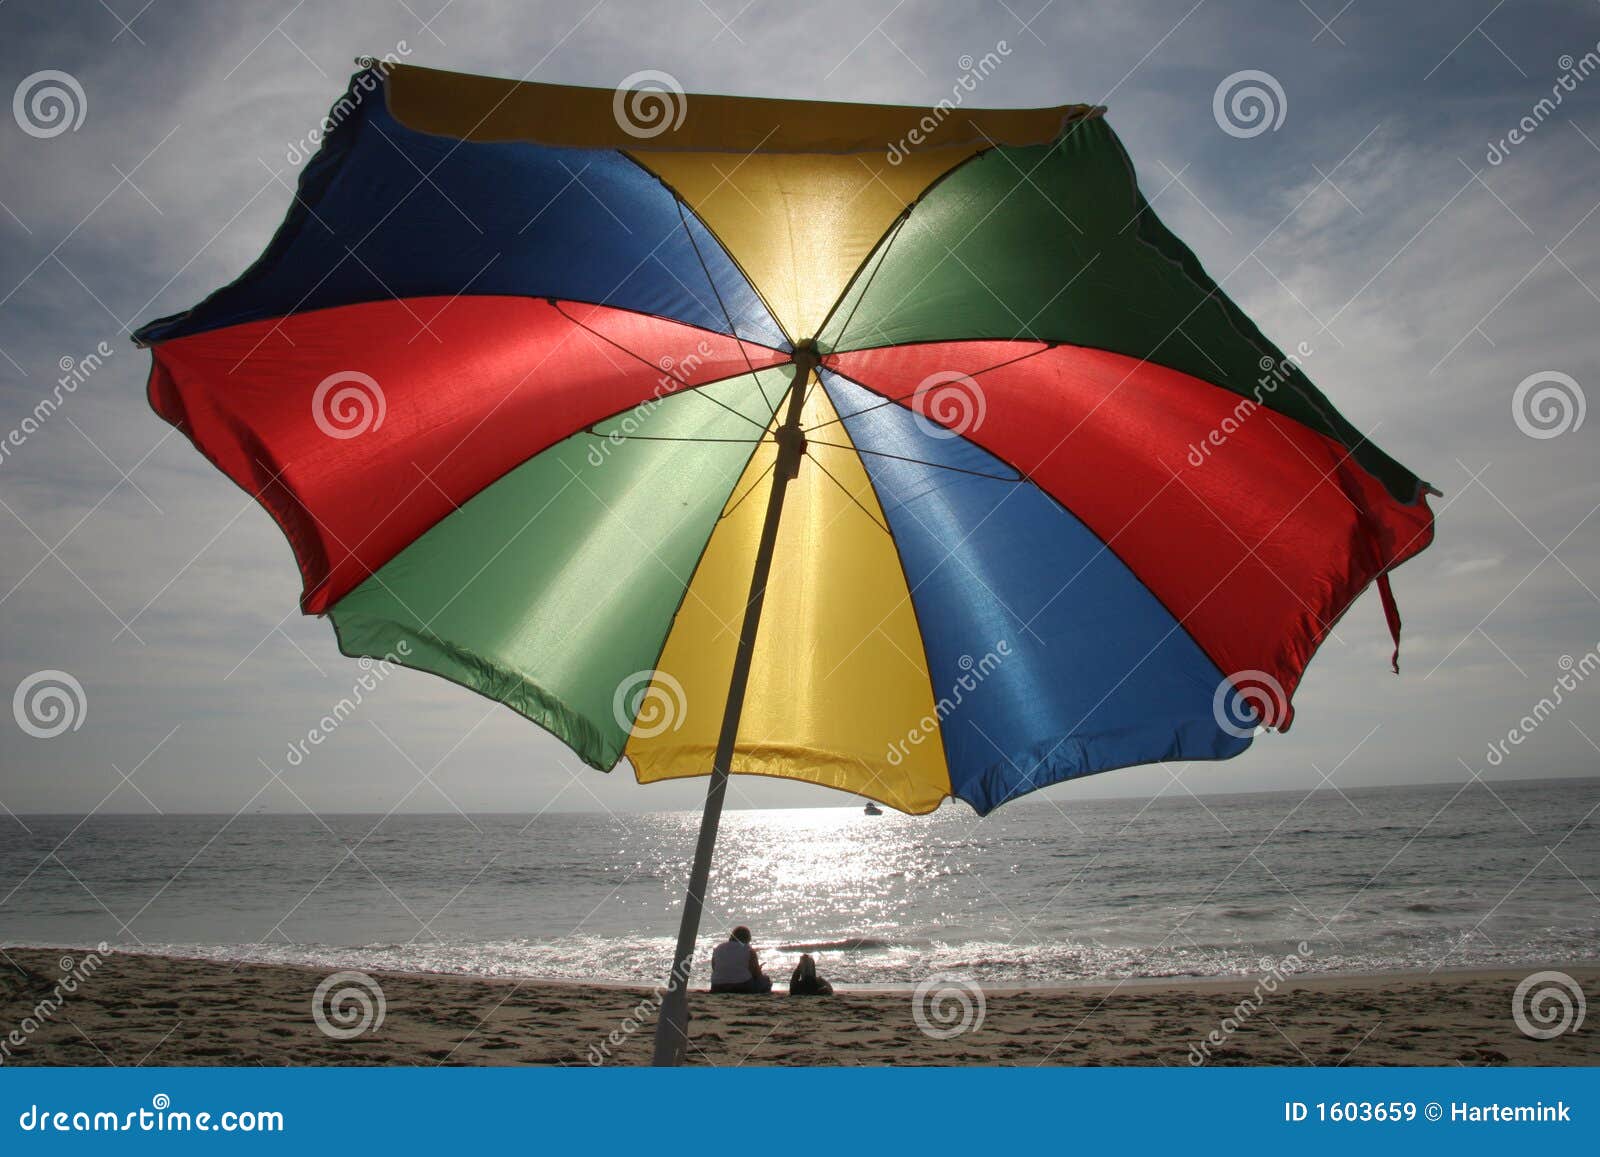 smal pizza badminton De Scène Van Het Strand Met Kleurrijke Paraplu Die Bescherming Aanbiedt  Tegen Zon En Regen Stock Afbeelding - Image of virtueel, kleurrijk: 1603659